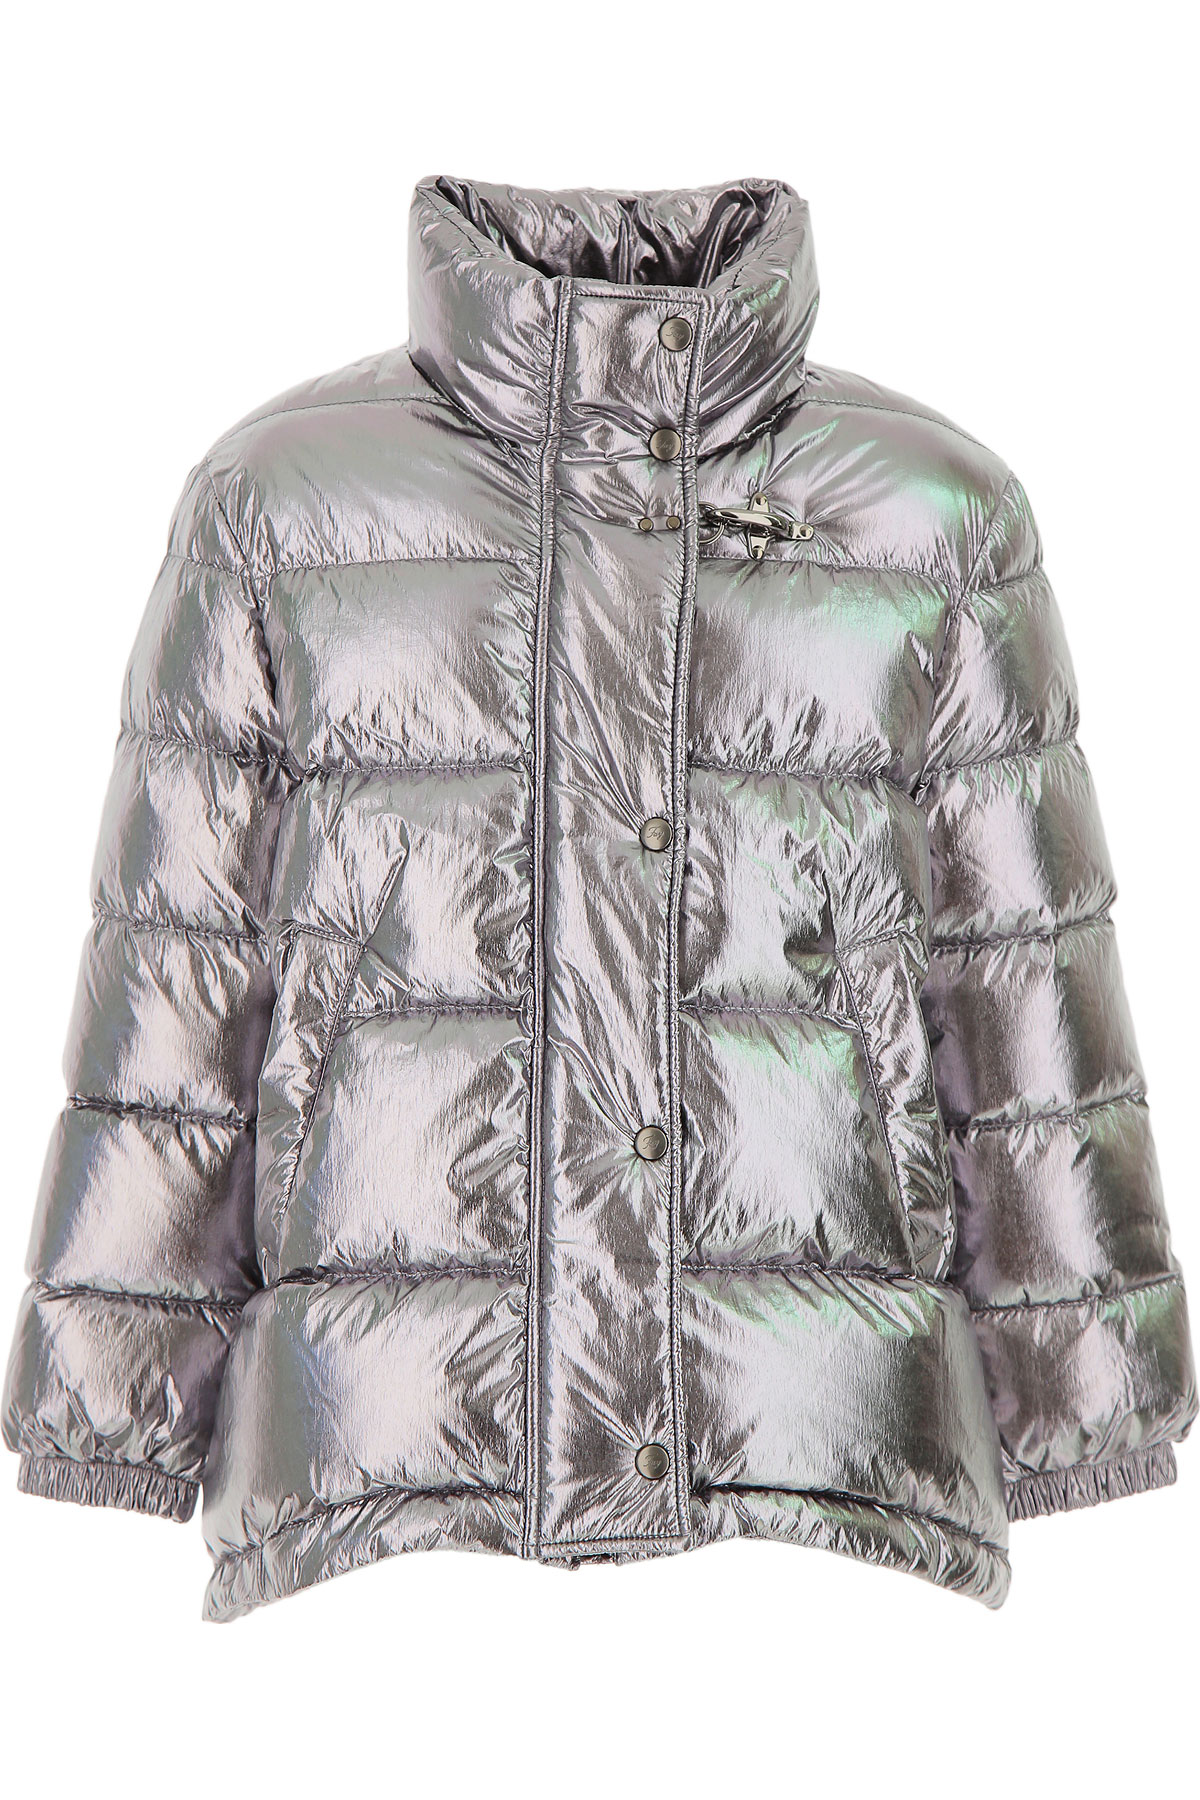 Fay Kinder Daunen Jacke für Mädchen, Soft Shell Ski Jacken Günstig im Sale, Silber, Polyamid, 2017, 10Y 8Y